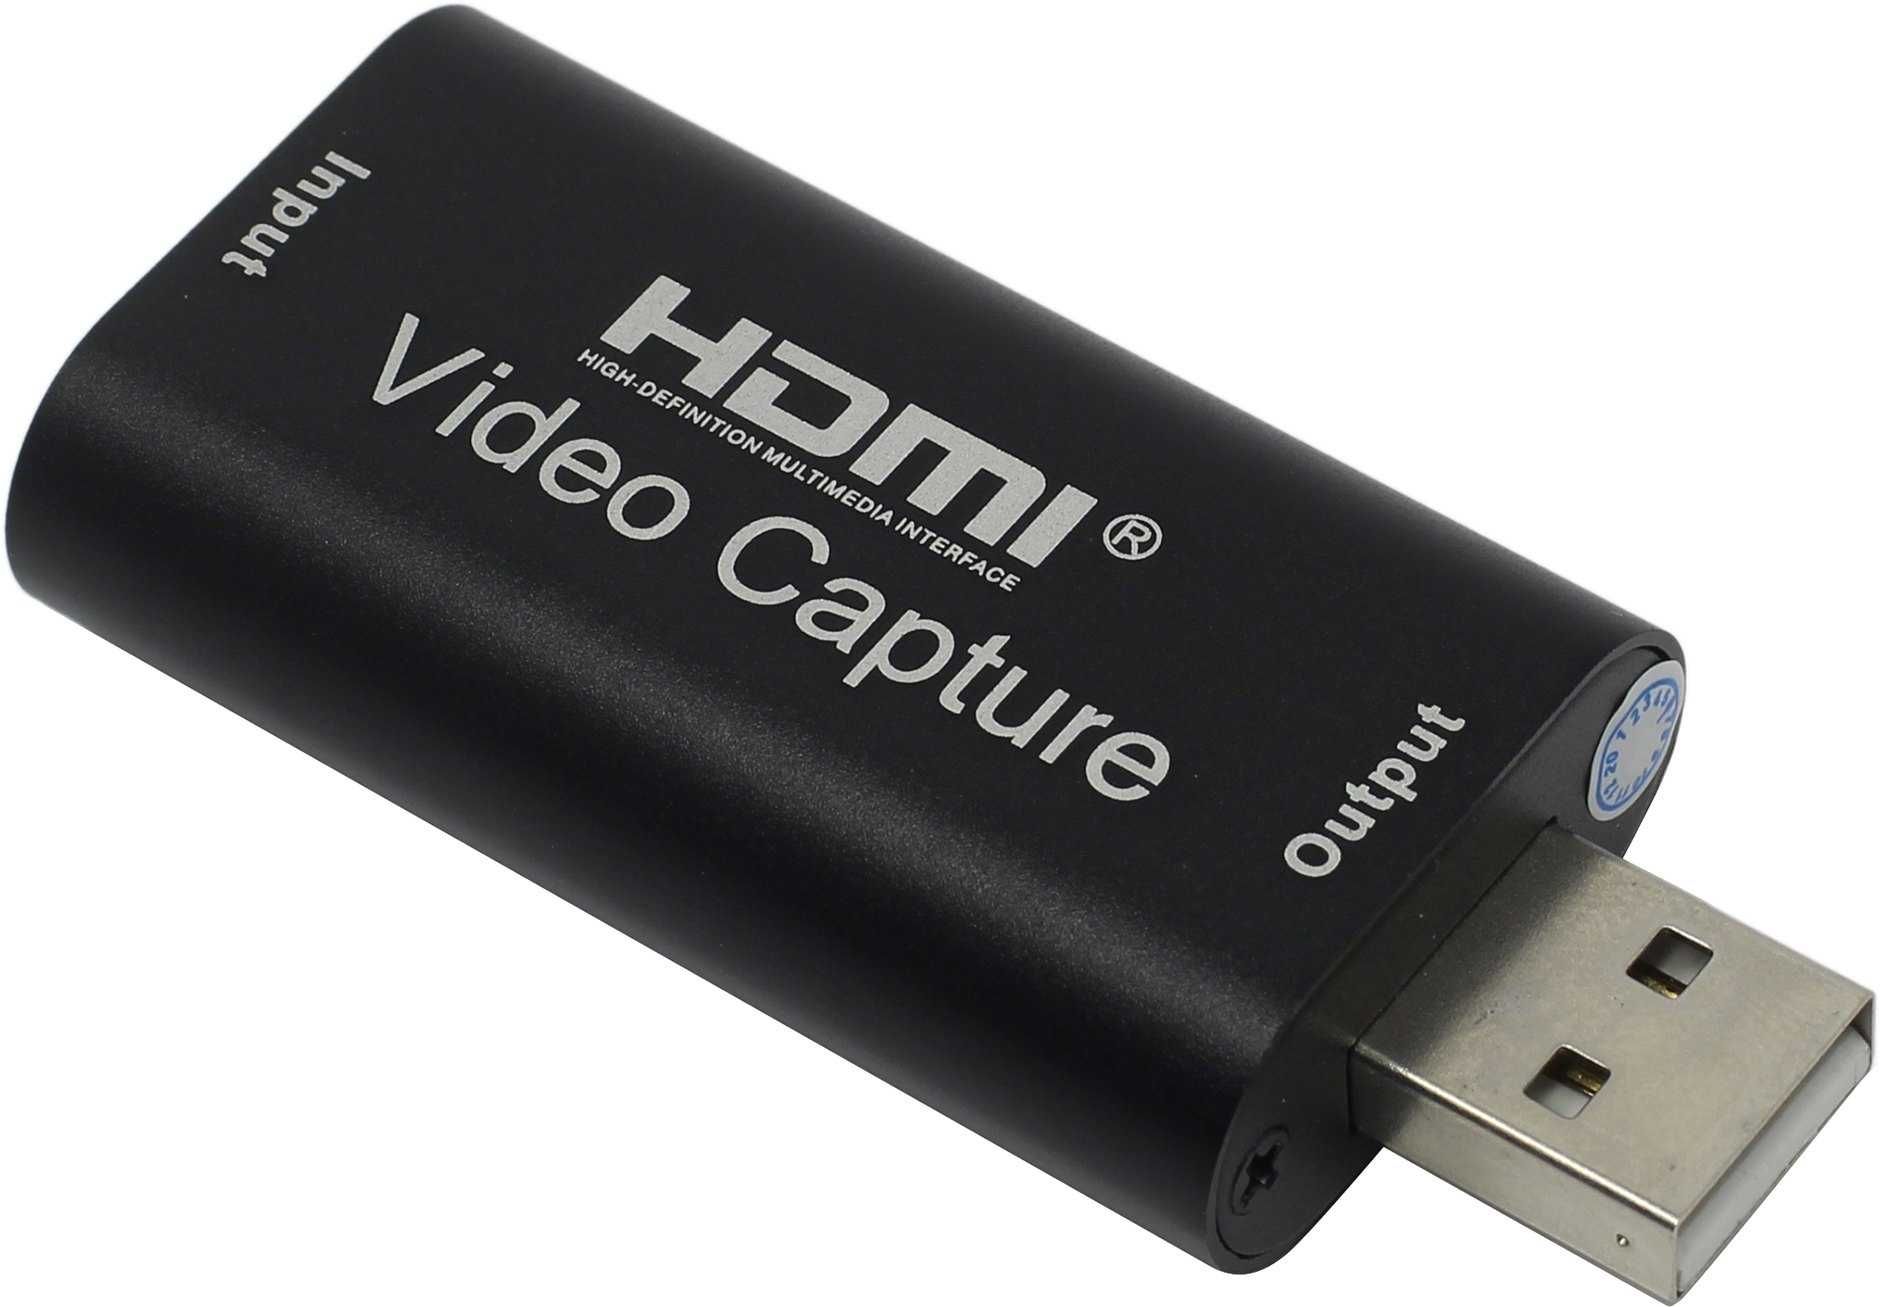 Адаптер HDMI to USB 2.0